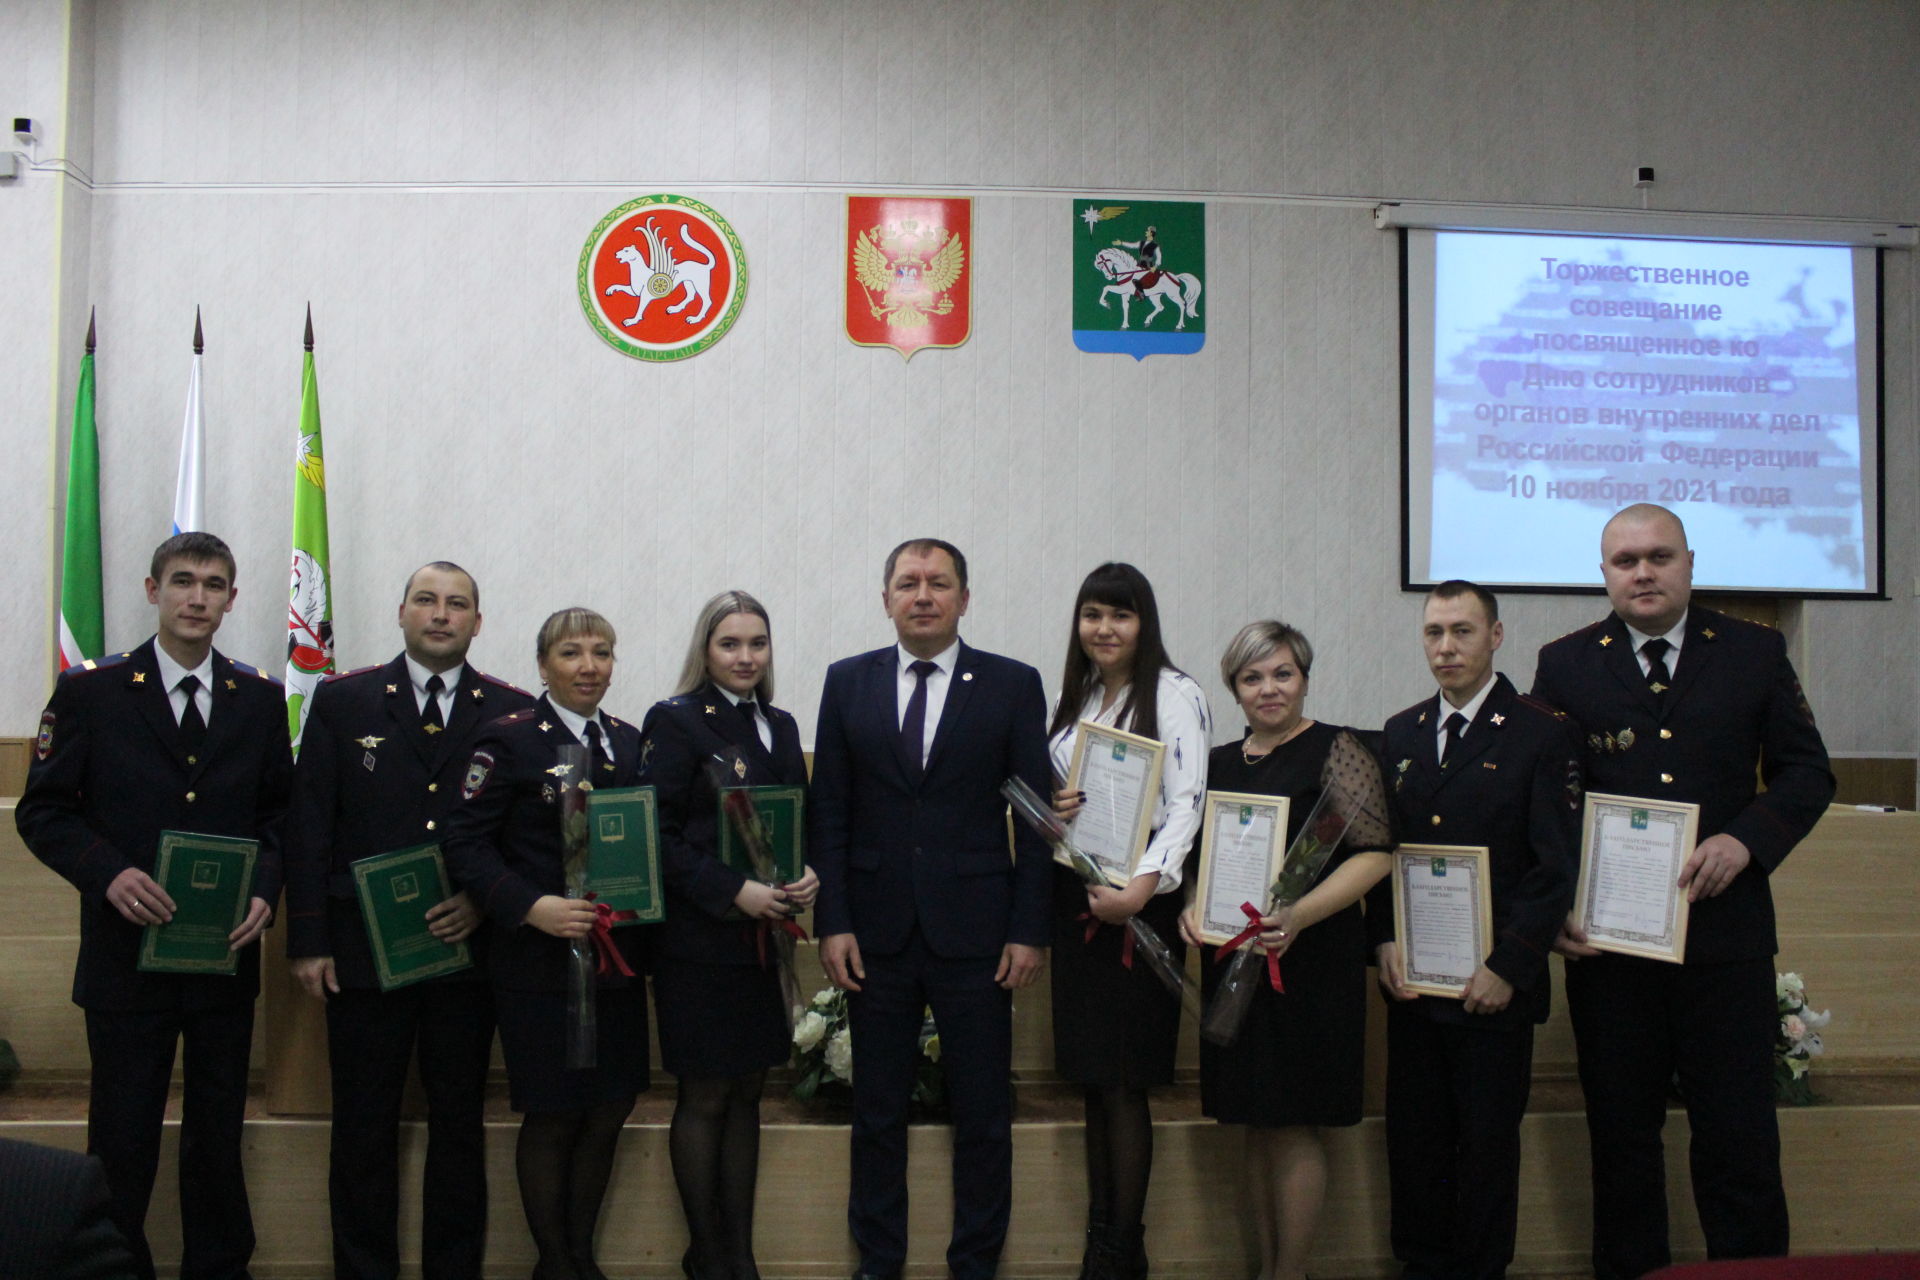 10 ноября - День сотрудников органов внутренних дел Российской Федерации